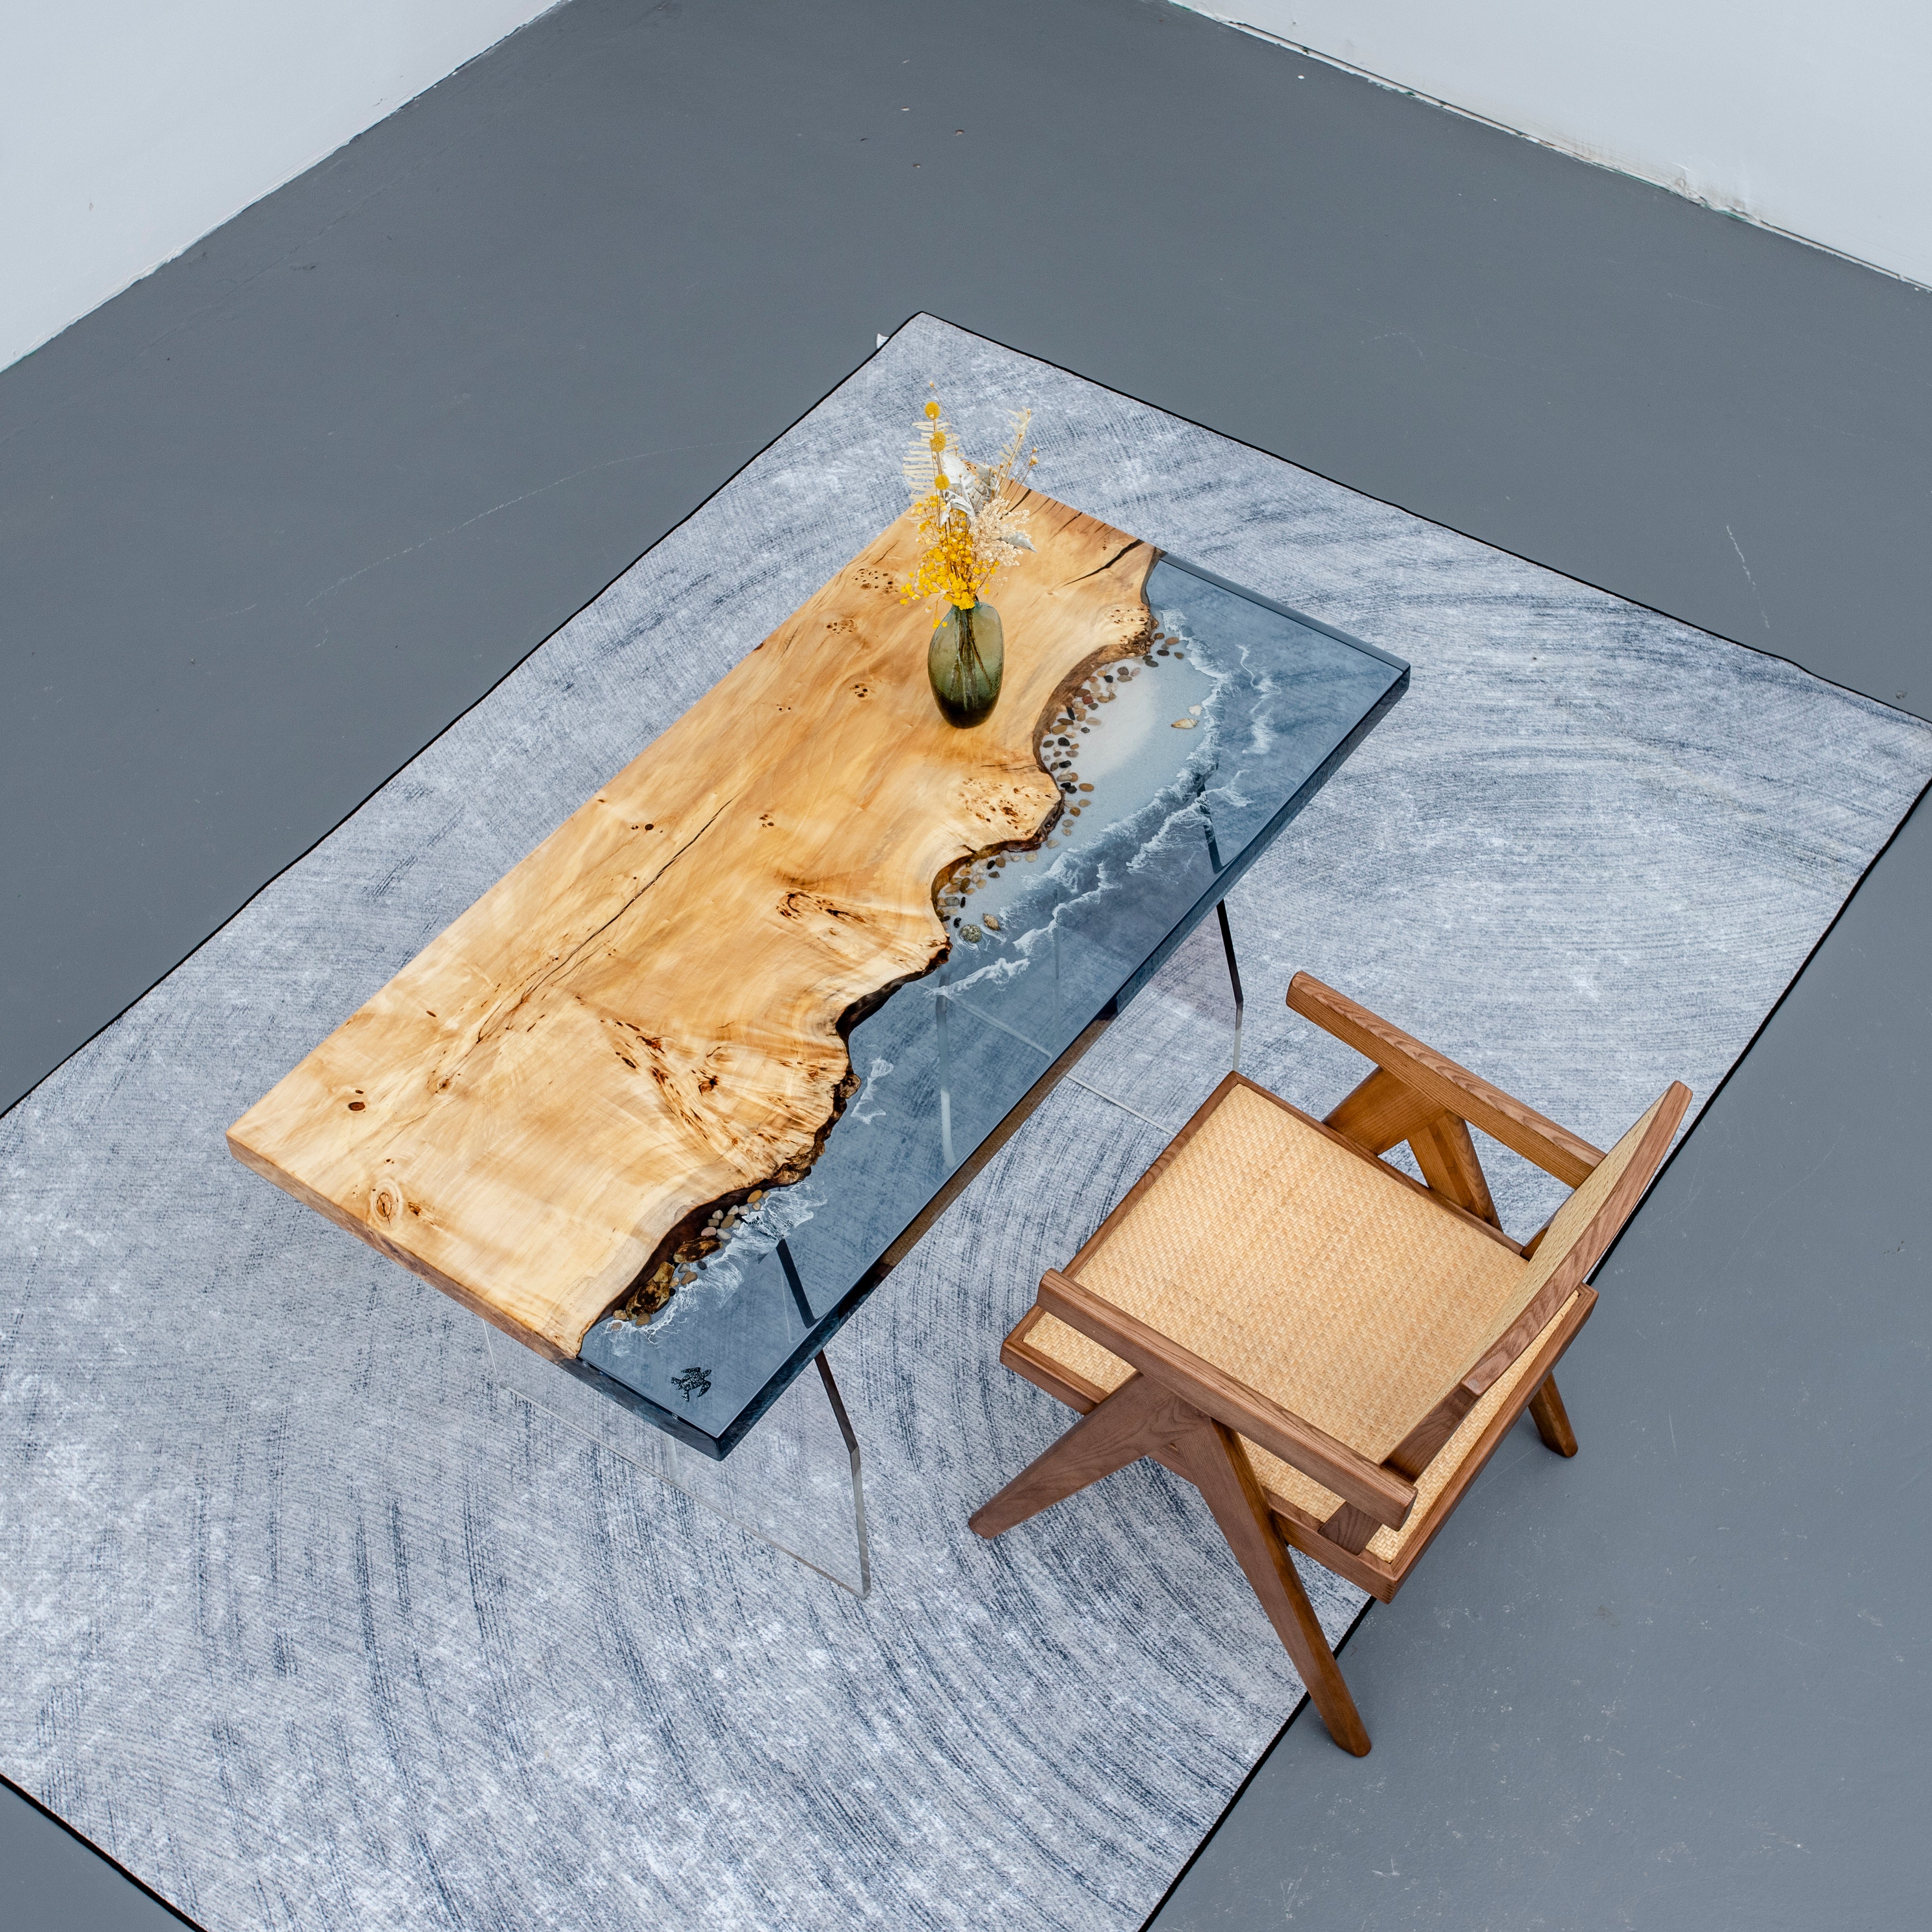 テーブル用ポプラウッドエポキシ樹脂、エポキシ樹脂テーブルのアイデア、ポプラエポキシテーブル